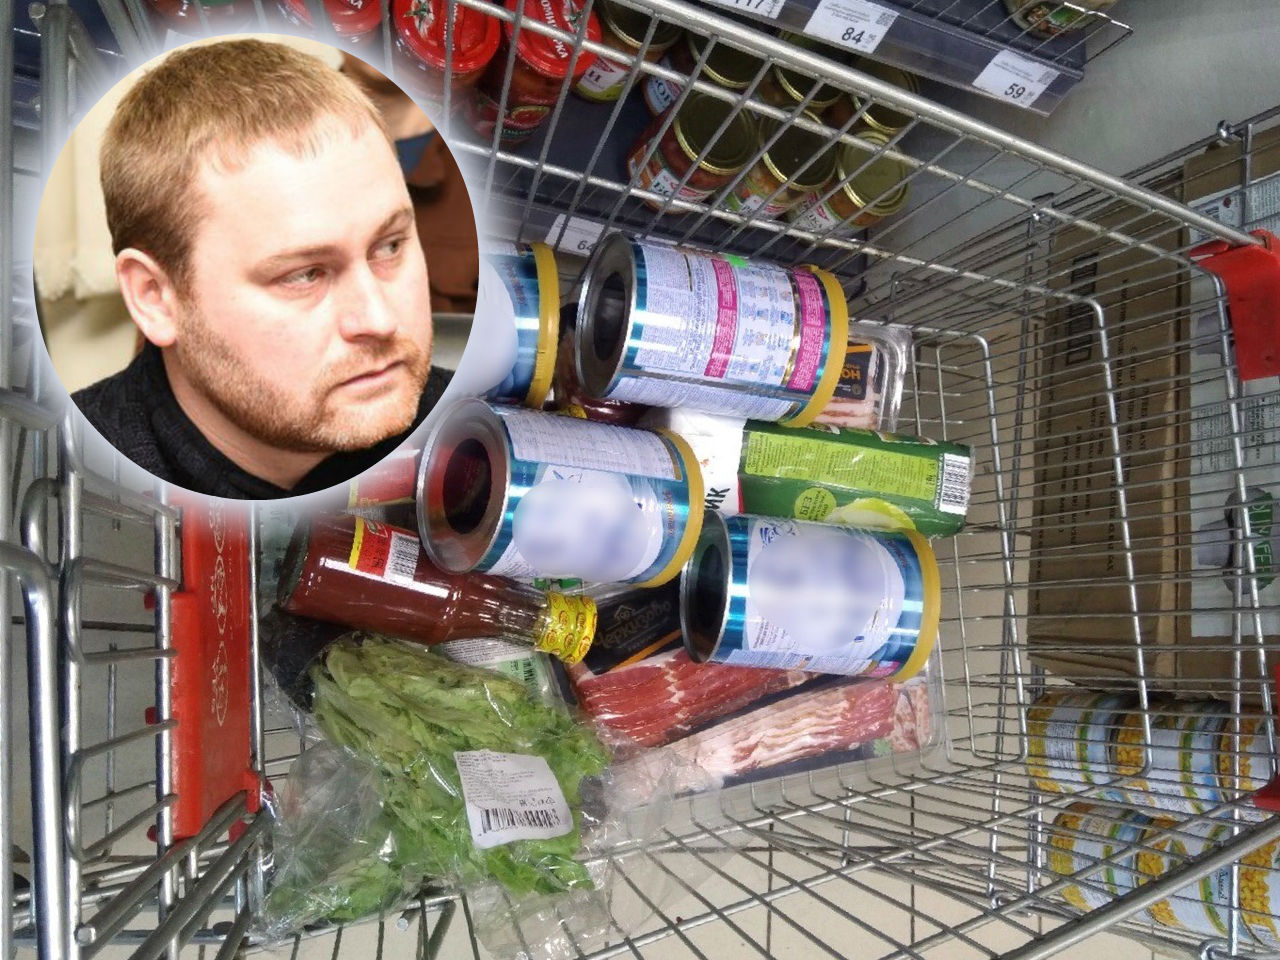 "Травят детей": опасные находки в продуктовом магазине возмутили жителя Ярославля